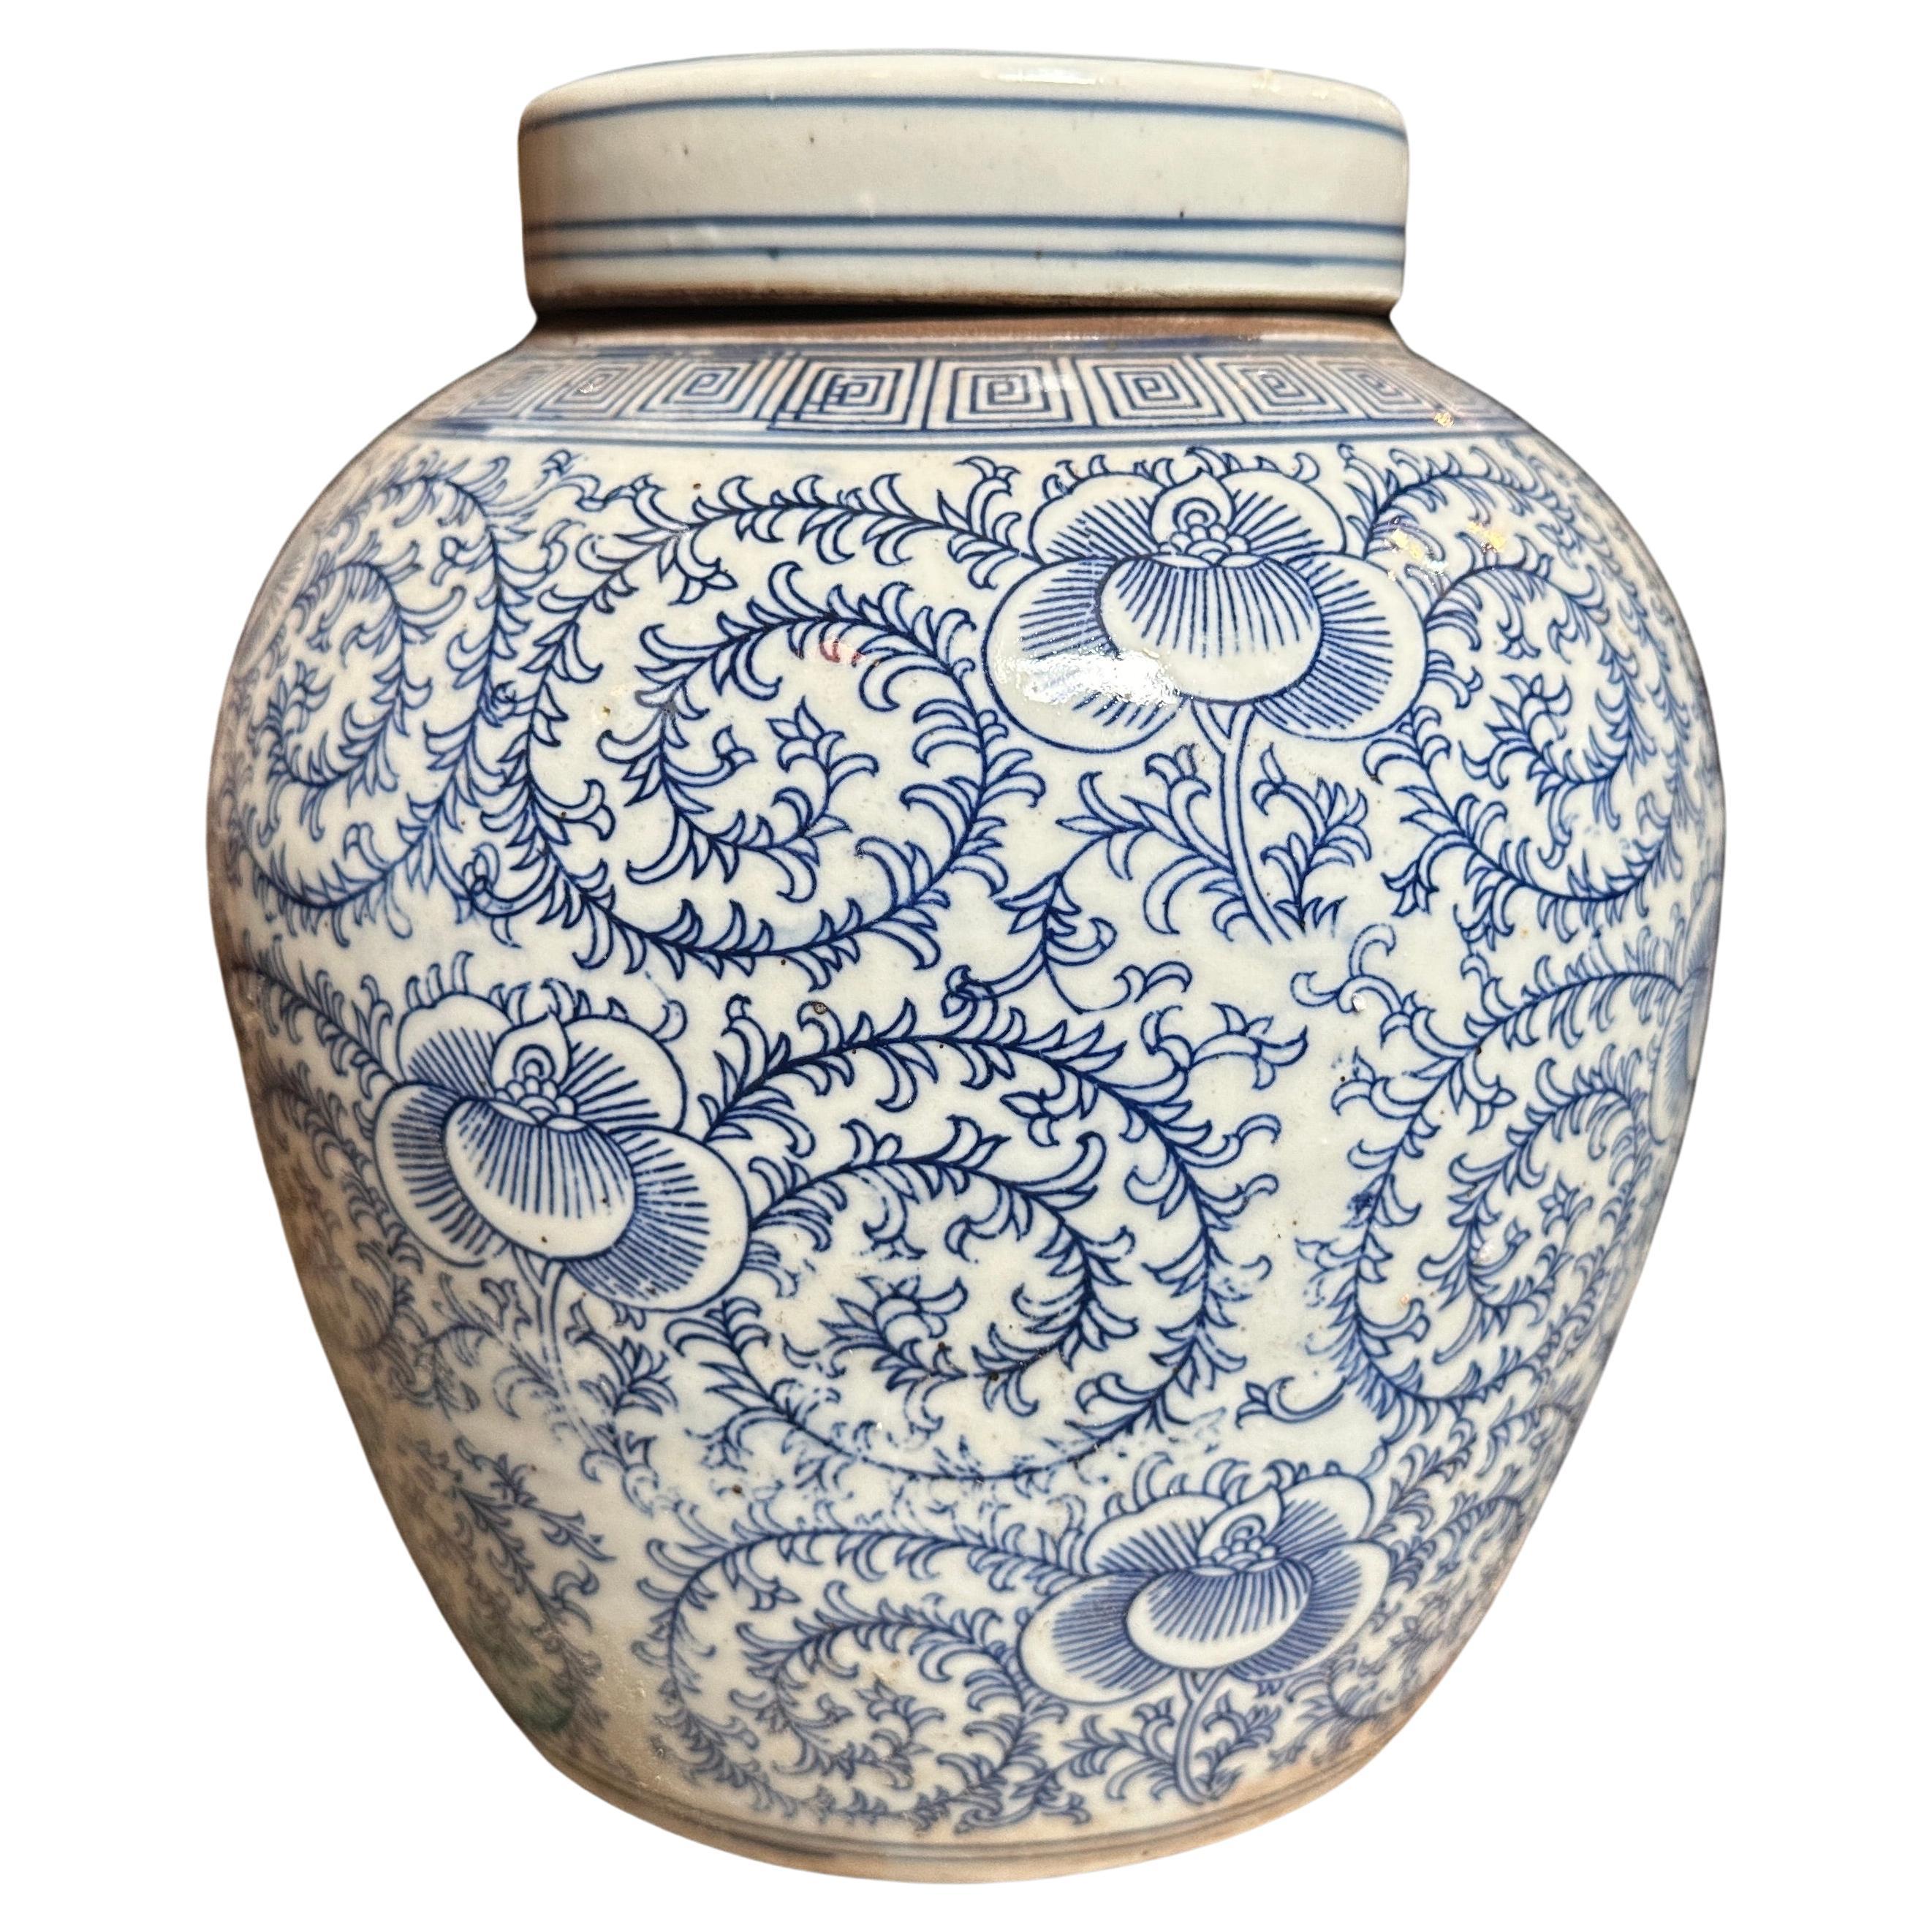 Jarre à gingembre chinoise en céramique bleue et blanche de la fin du 20e siècle